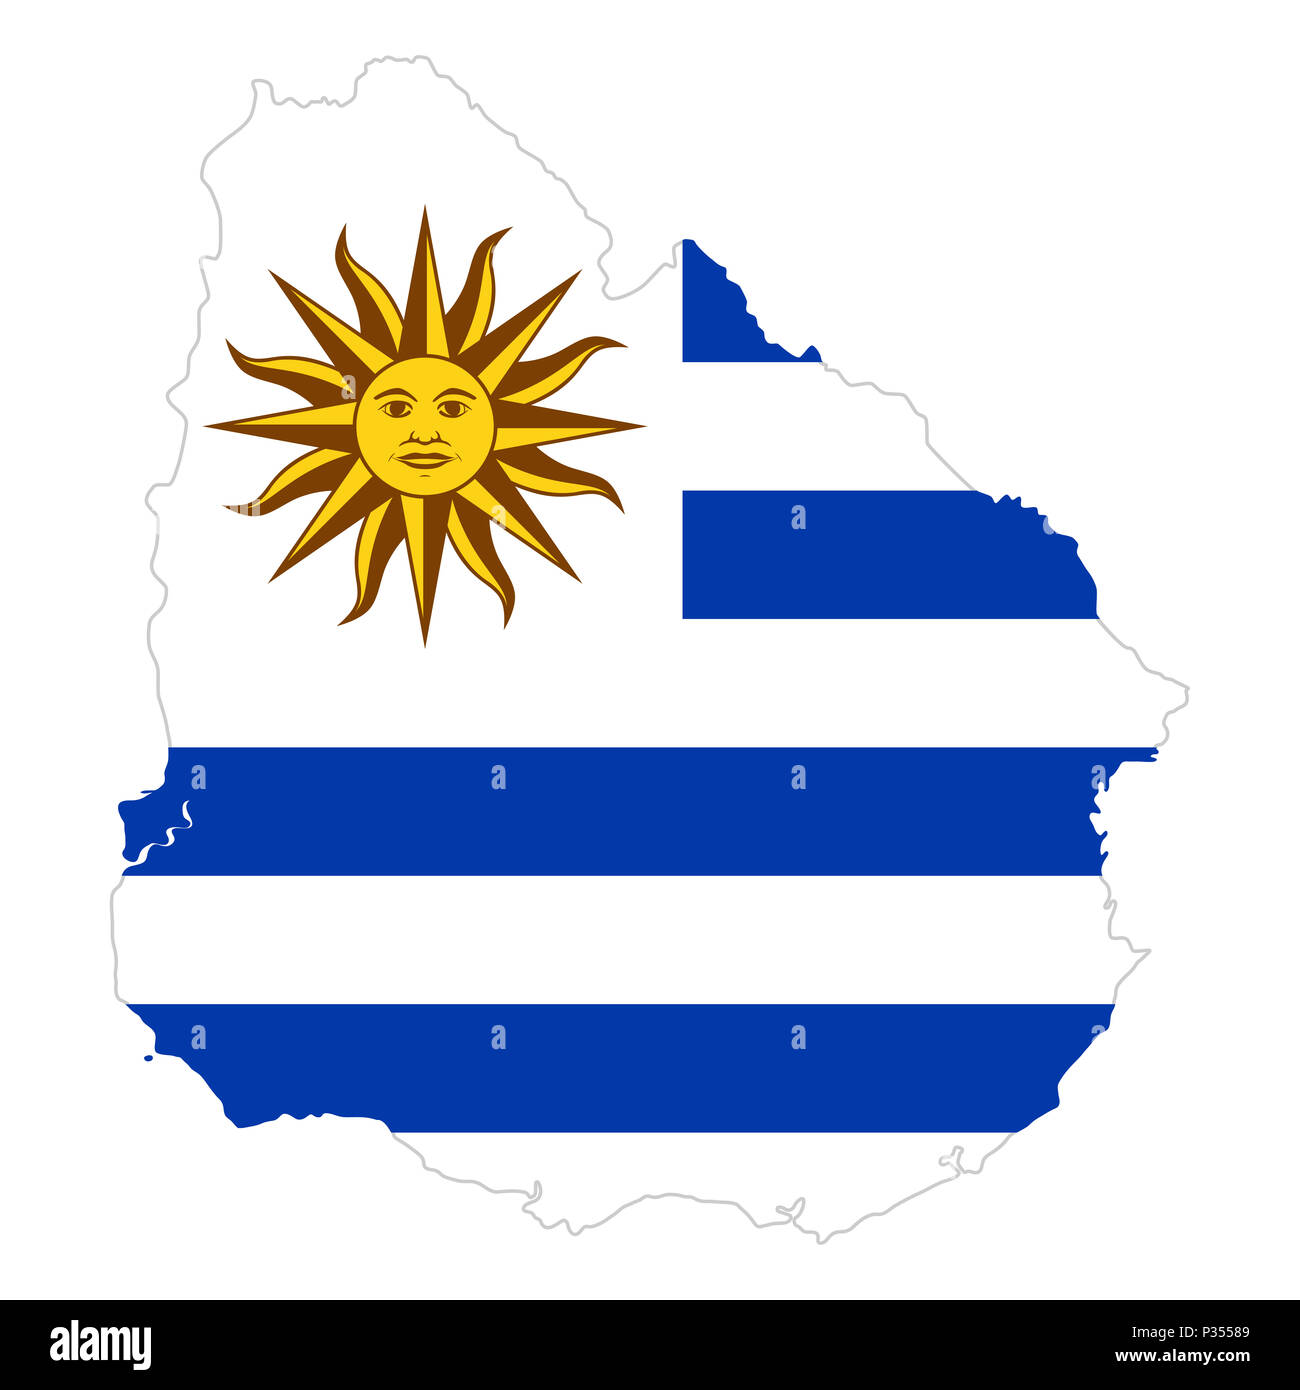 Bandiera Nazionale dell Uruguay con sole di maggio nel paese silhouette.  Bandiera del paese con emblema nazionale Sol de Mayo il cantone bianco e  bianco e blu Foto stock - Alamy